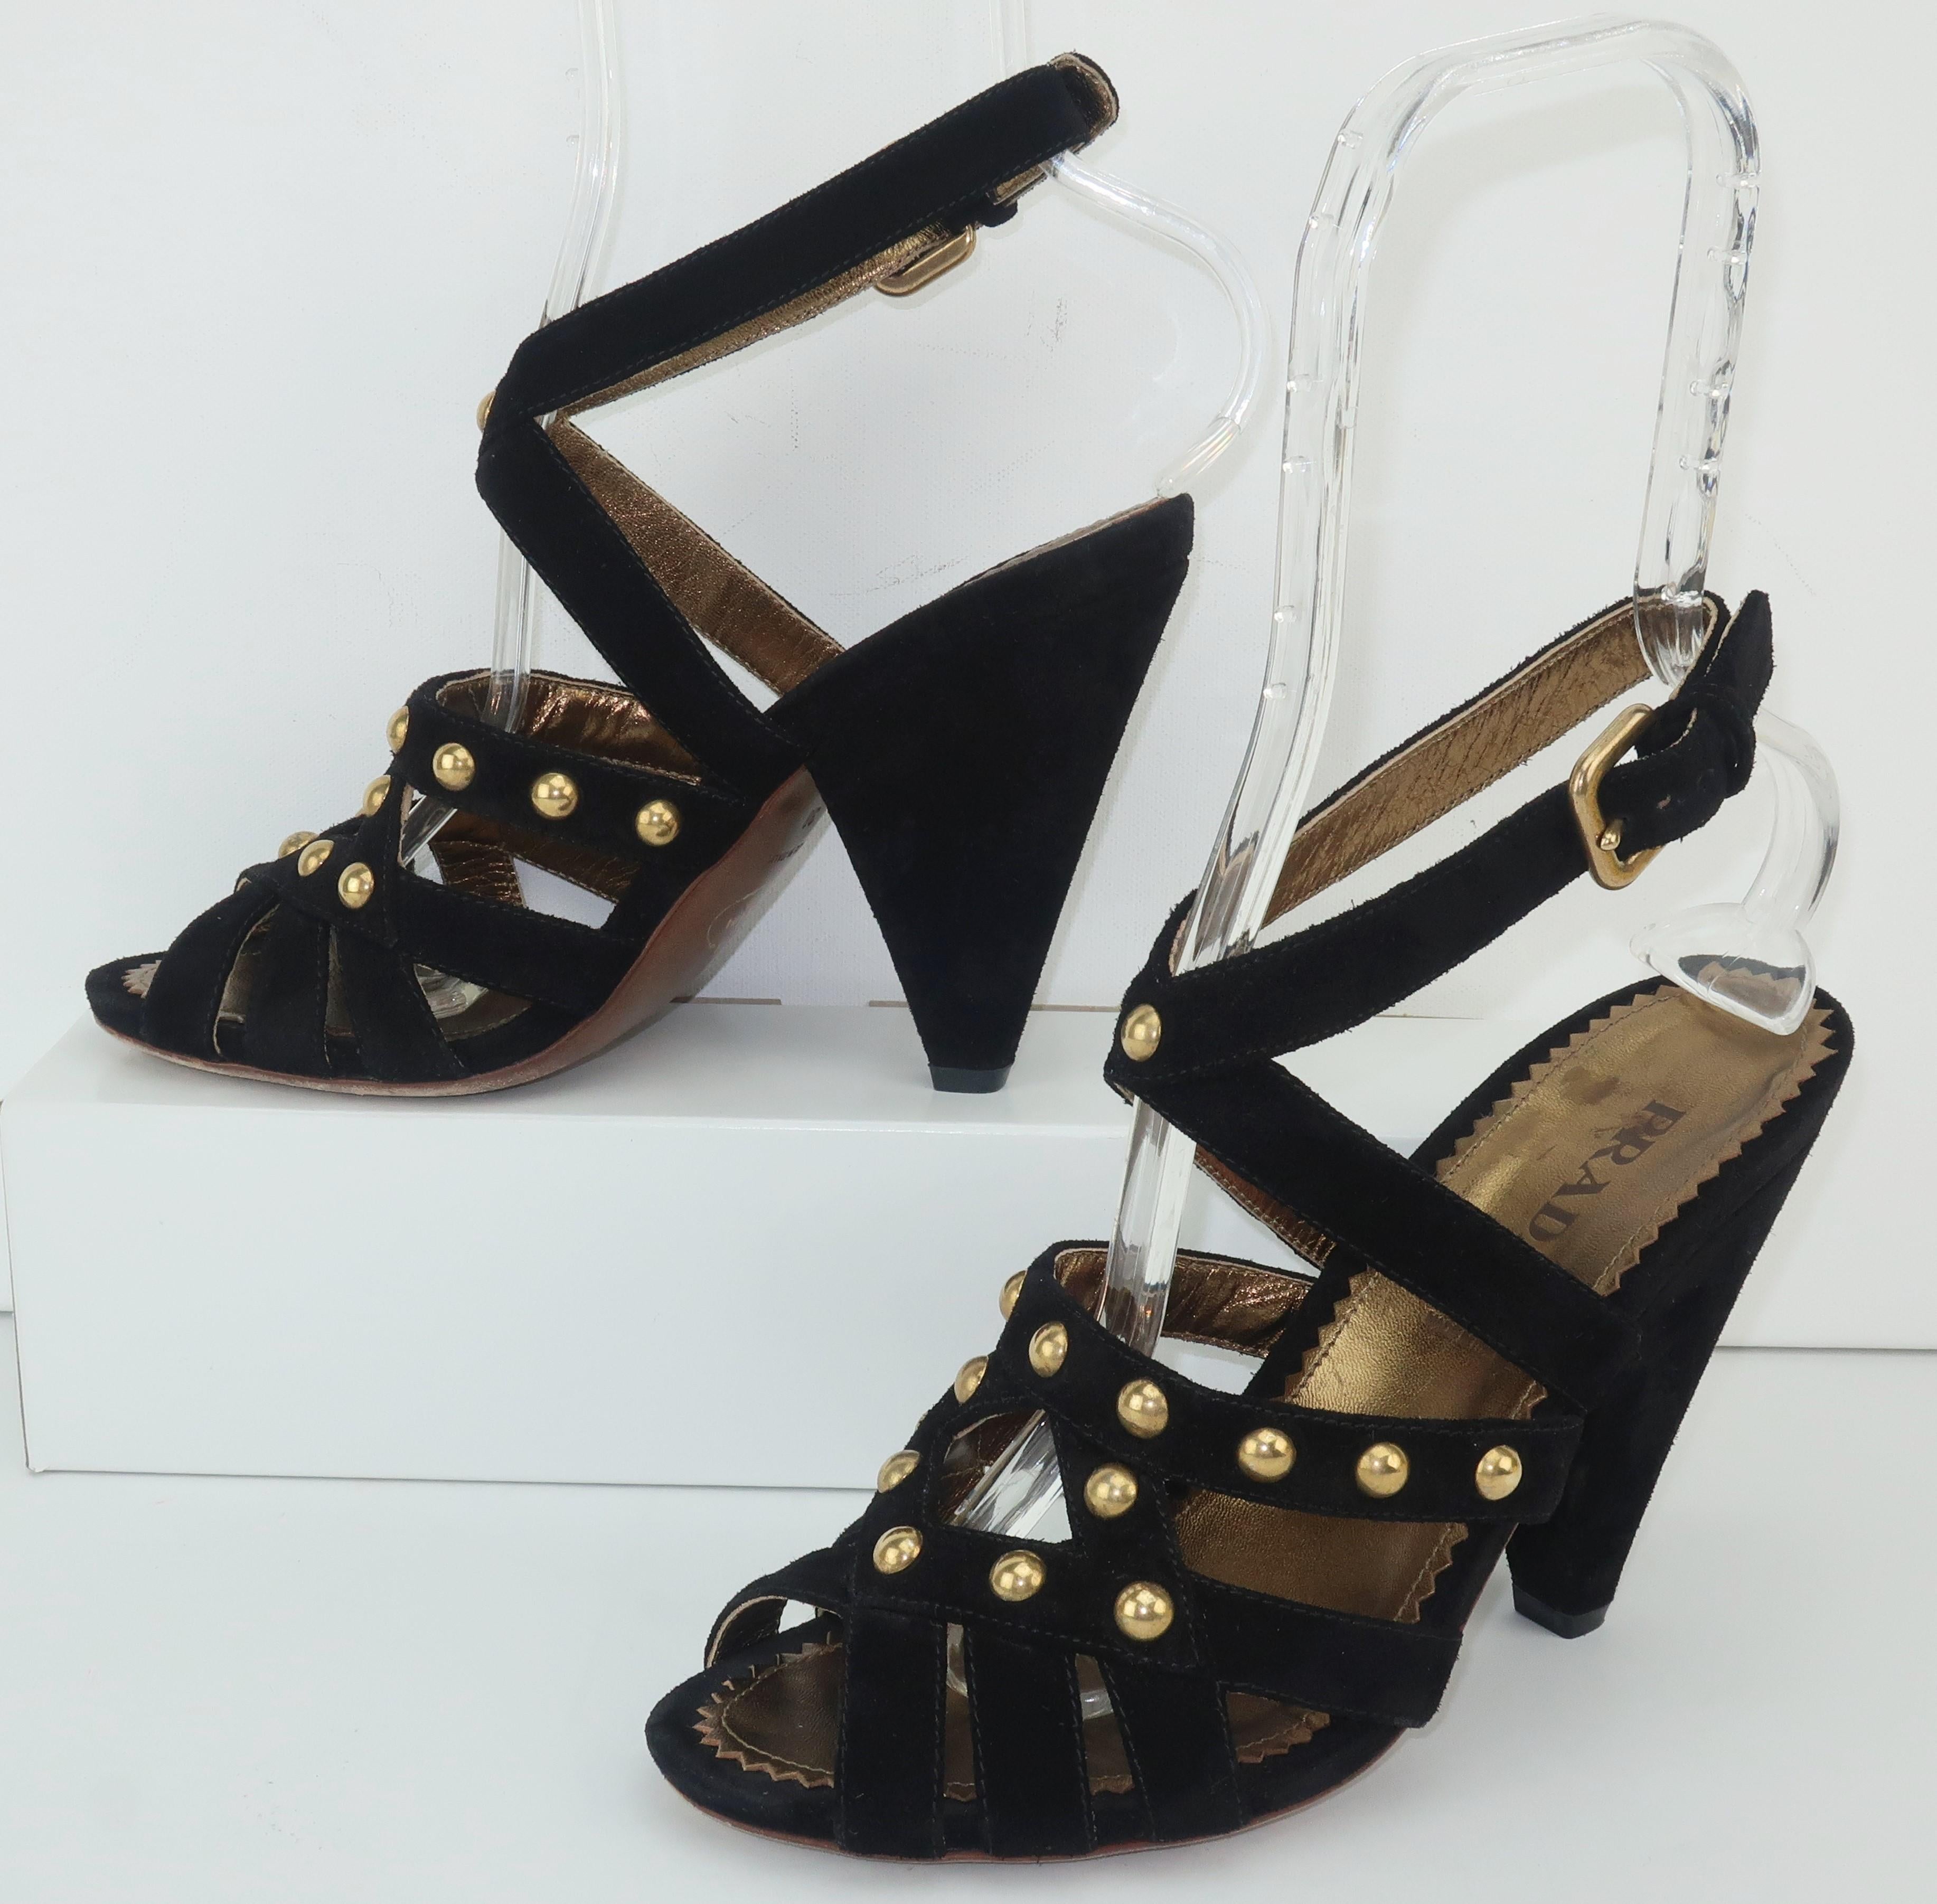 Diese modernen Prada-Schuhe sind von der Avantgarde-Mode der 1930er Jahre inspiriert.  Das Oberteil aus schwarzem Wildleder mit Riemen hat eine verstellbare Schnalle am Knöchel und ist mit goldenen Nieten verziert.  Der kegelförmige 4,5-Zoll-Absatz